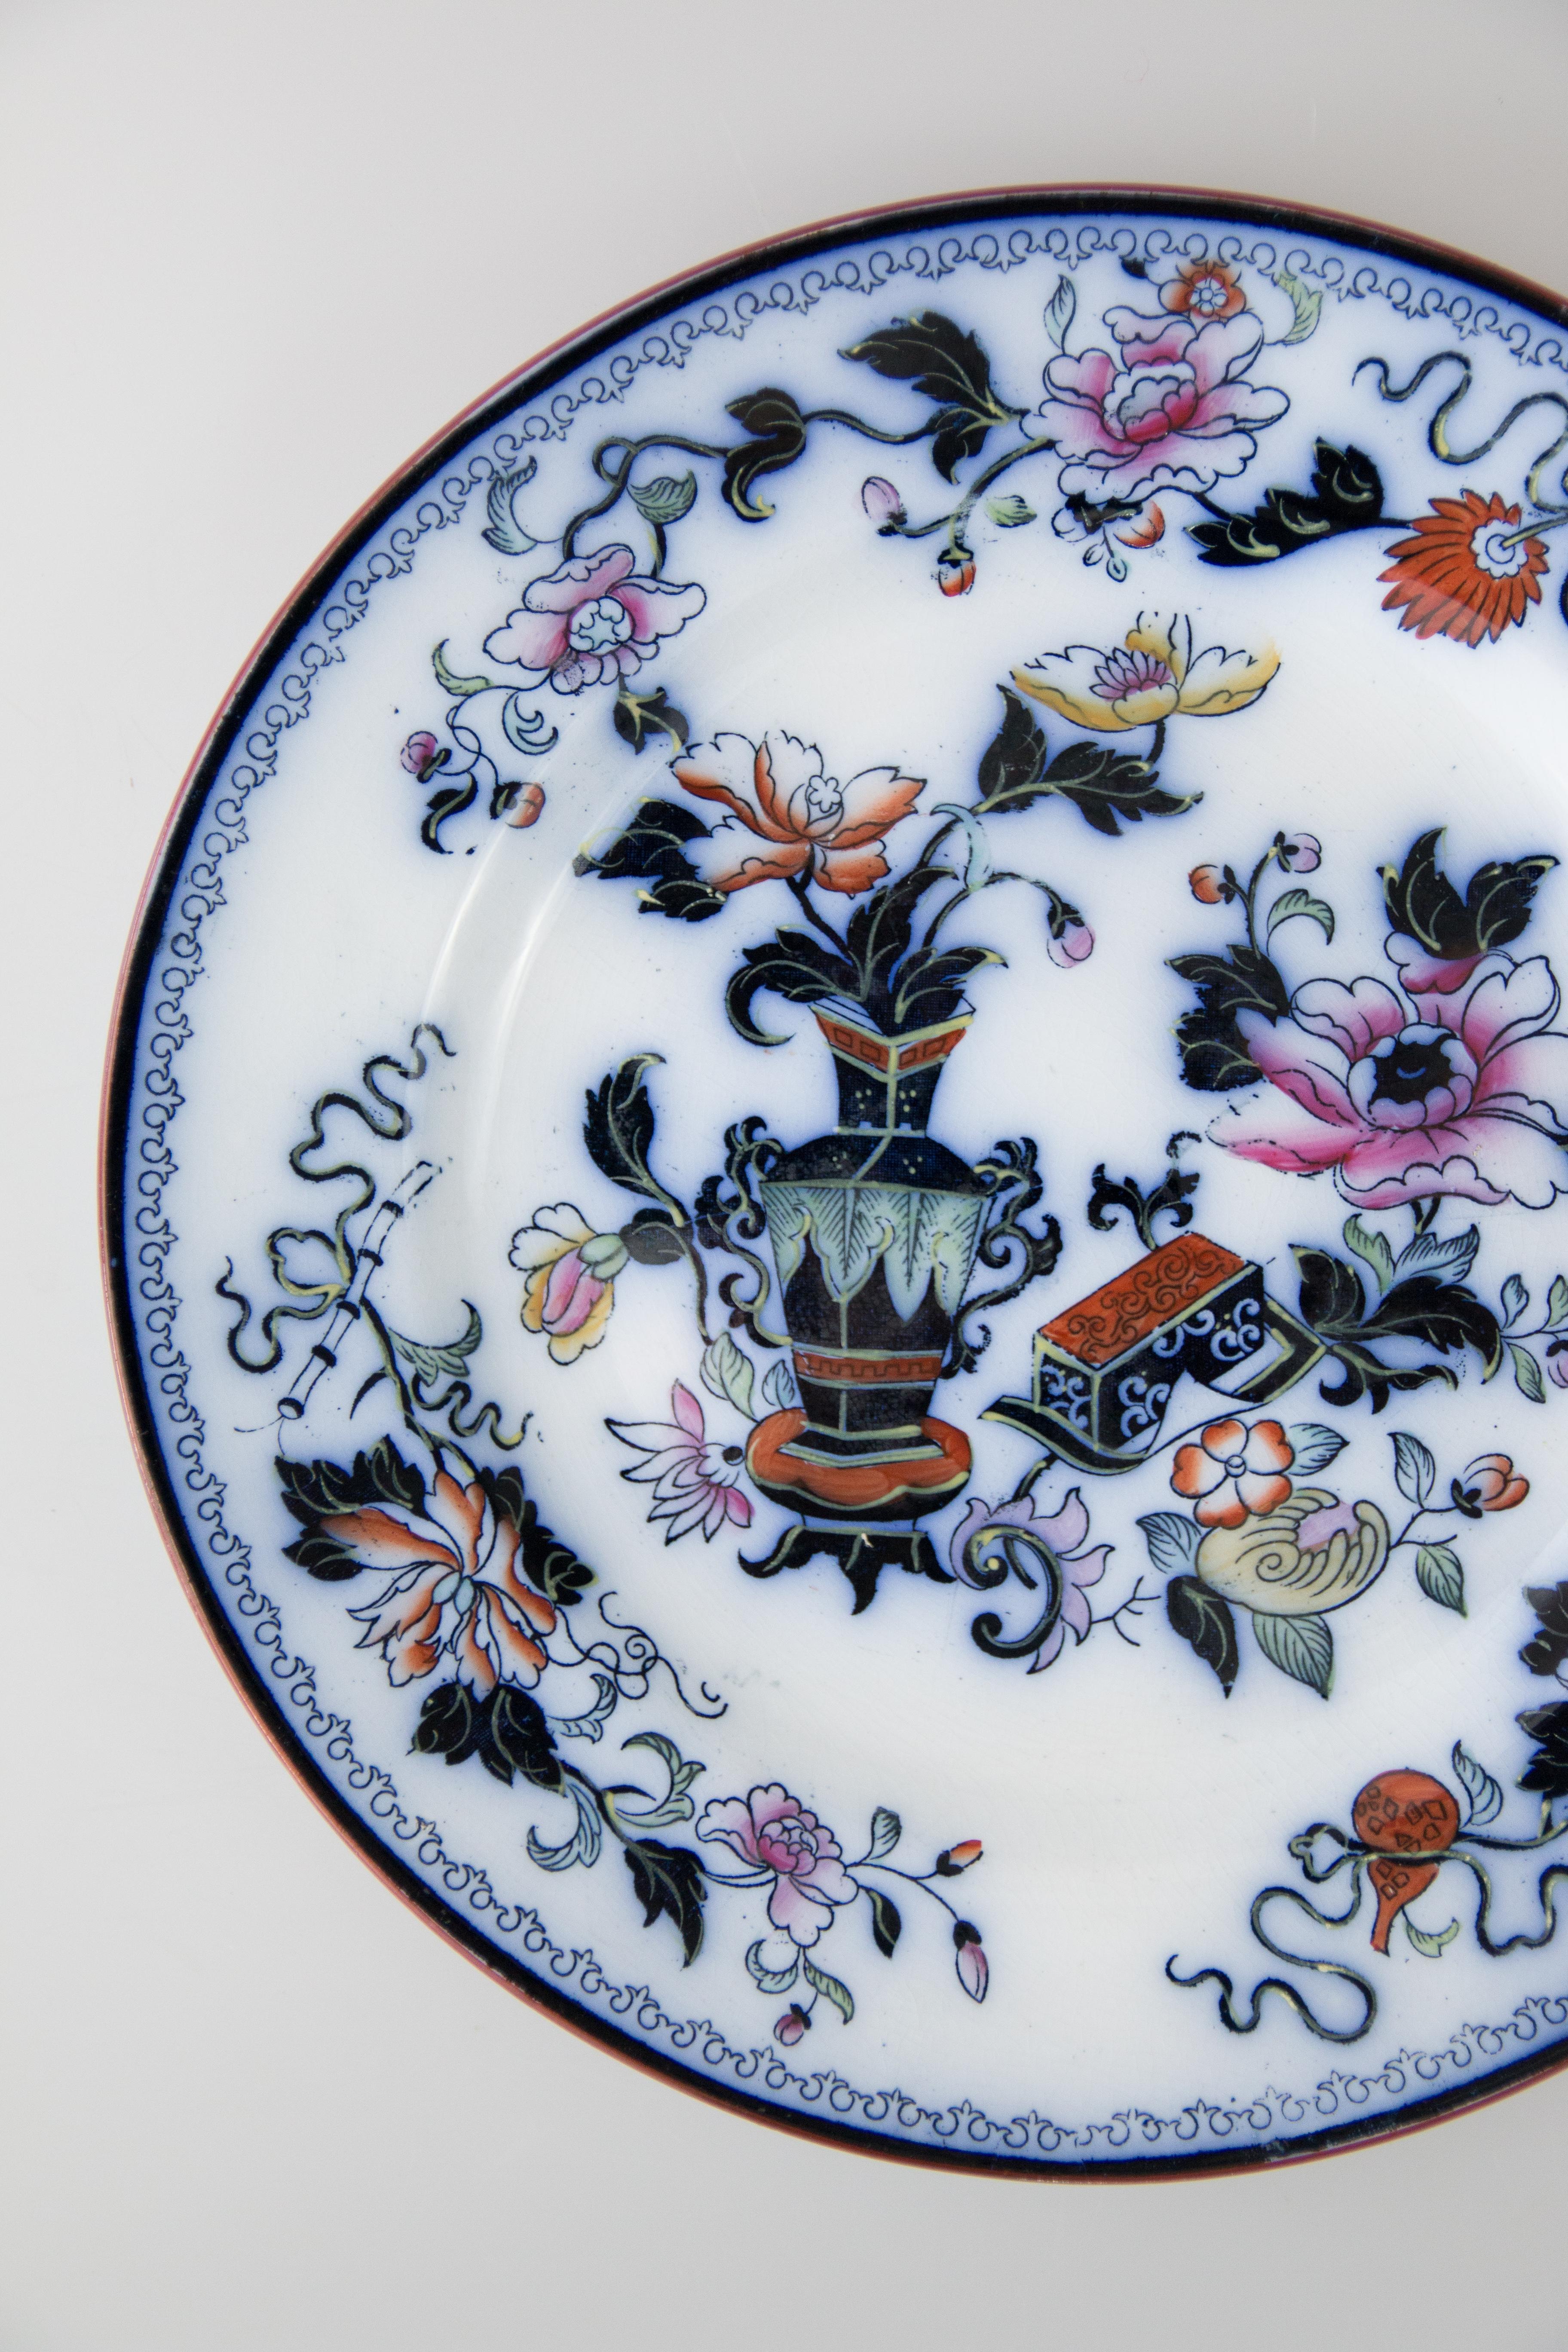 Très belle assiette ancienne en porcelaine de transfert de style chinois du Staffordshire, fabriquée par Ridgway, vers 1870. Marqué 